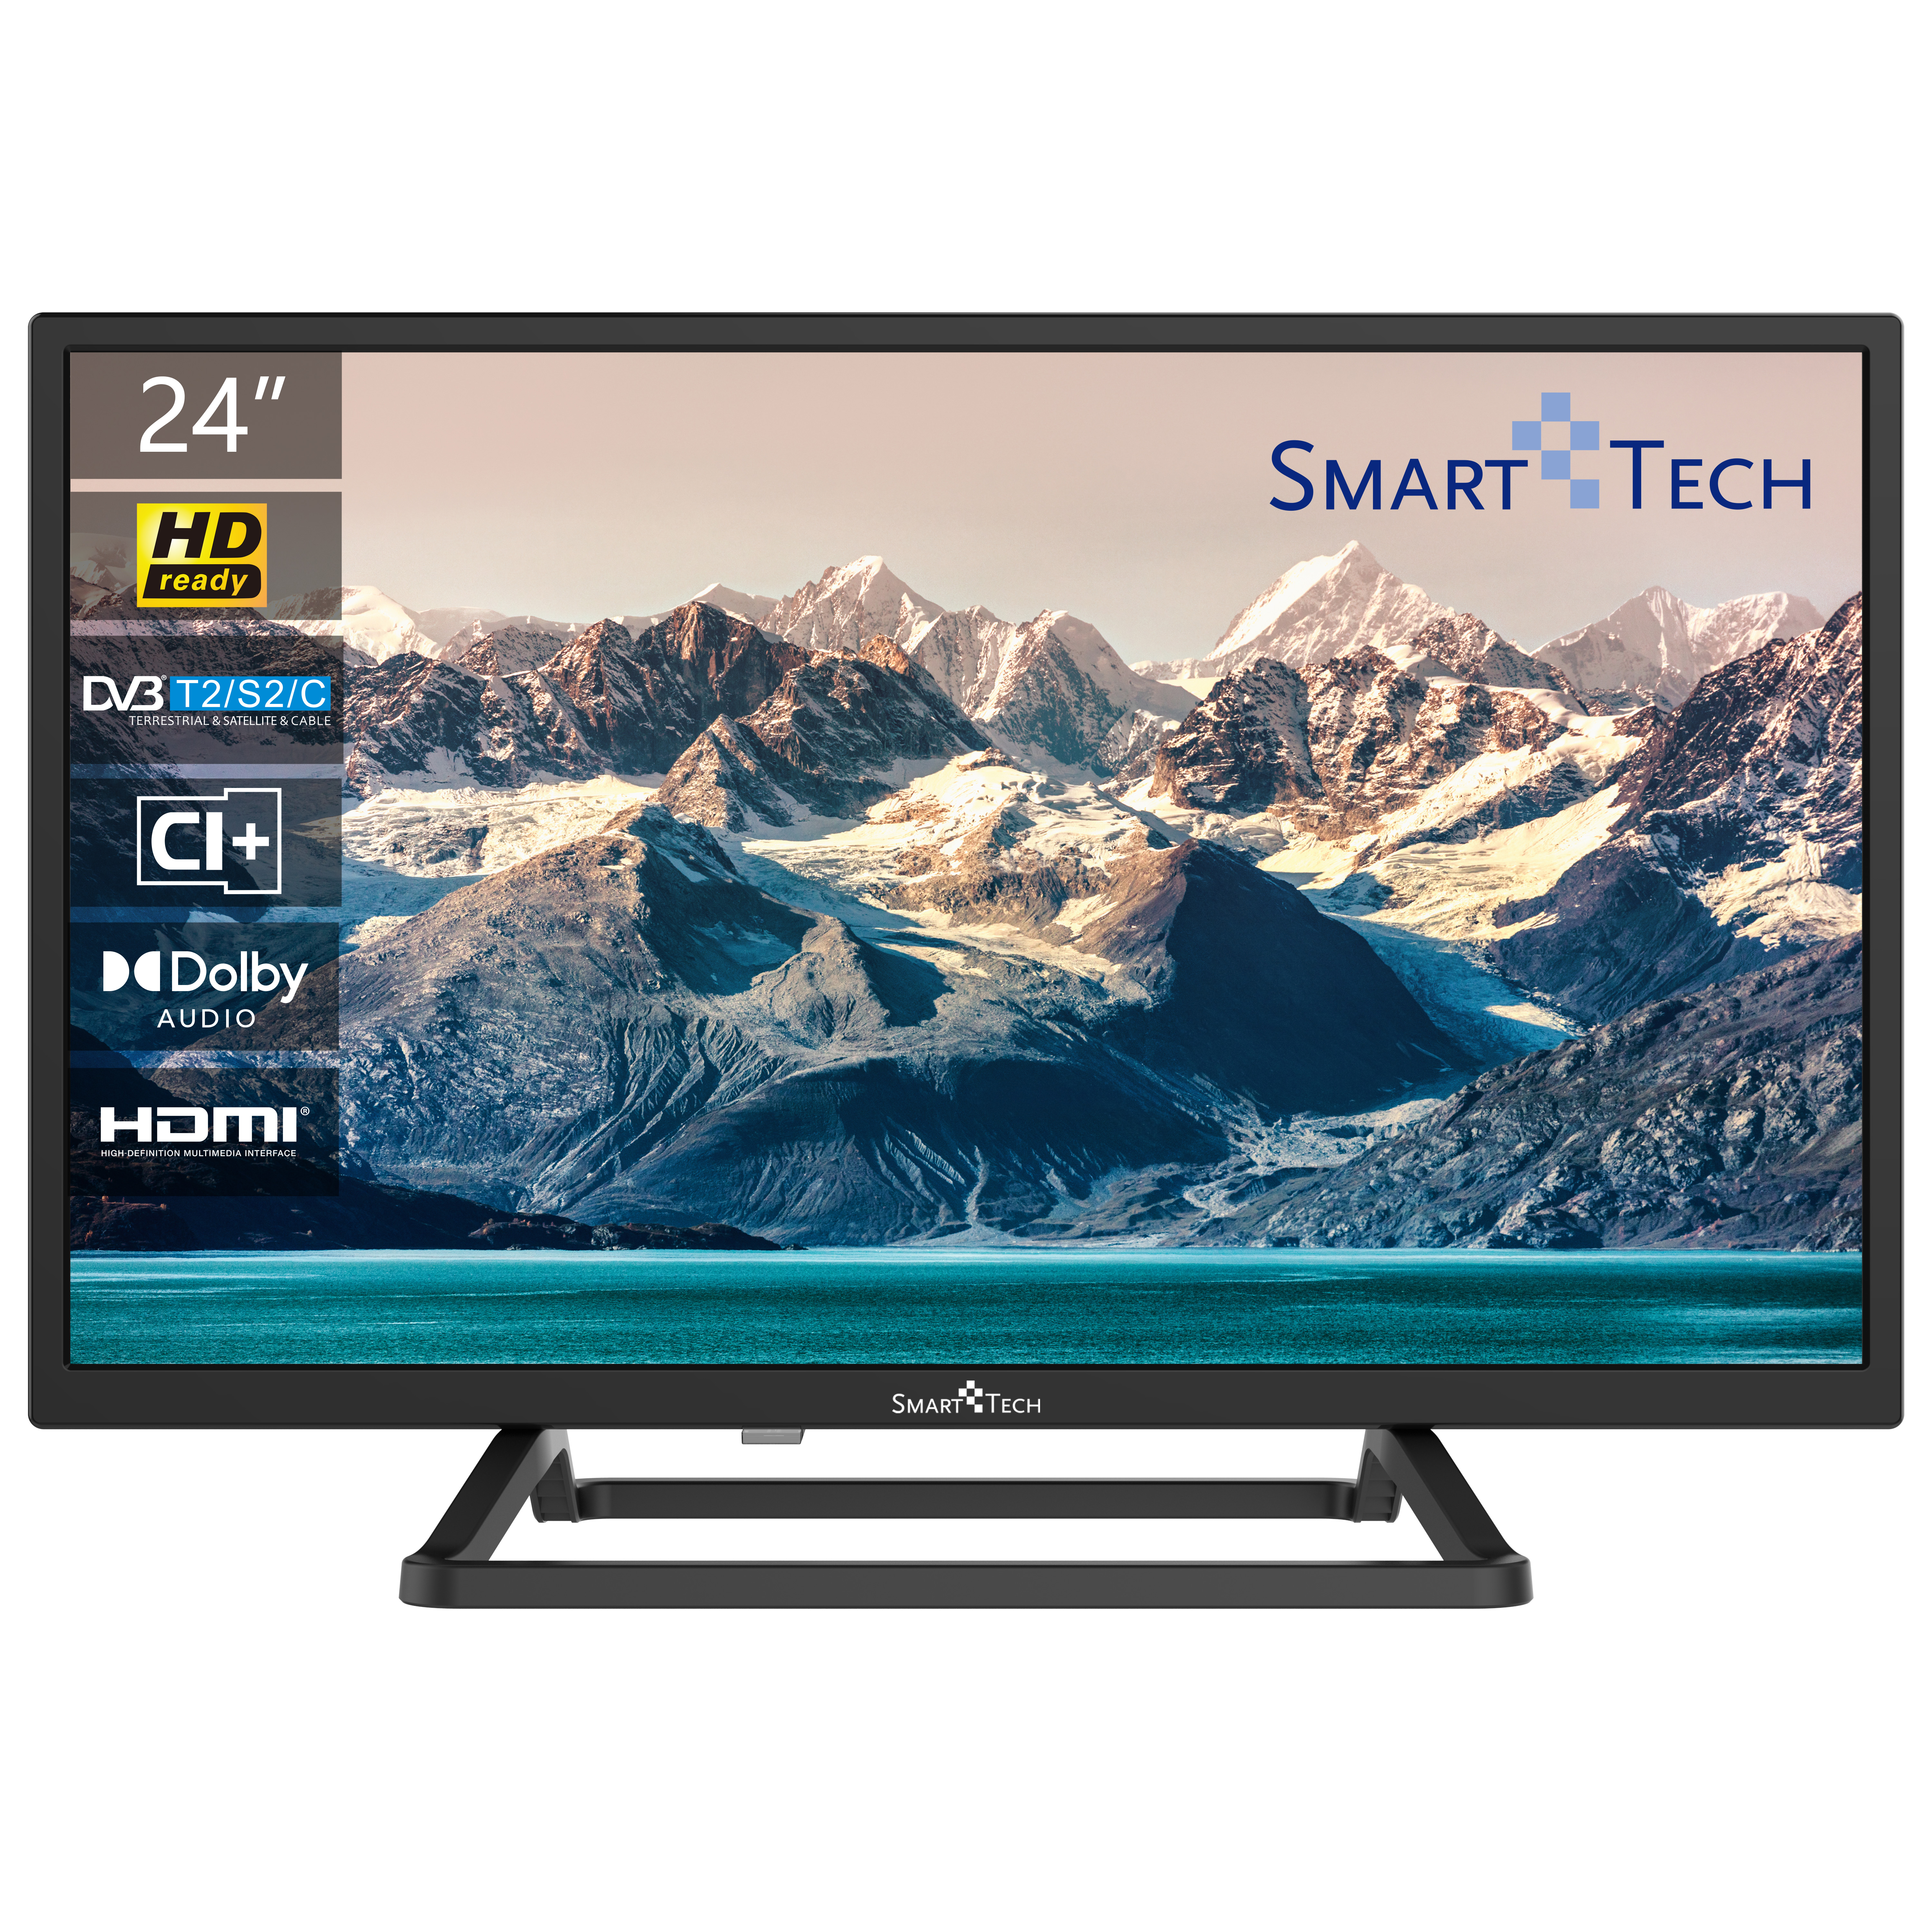 SMART TECH Zoll TV HD-ready) / LED TV 24HN10T3 60 24 Zoll Smart cm, (Flat, 24 Non